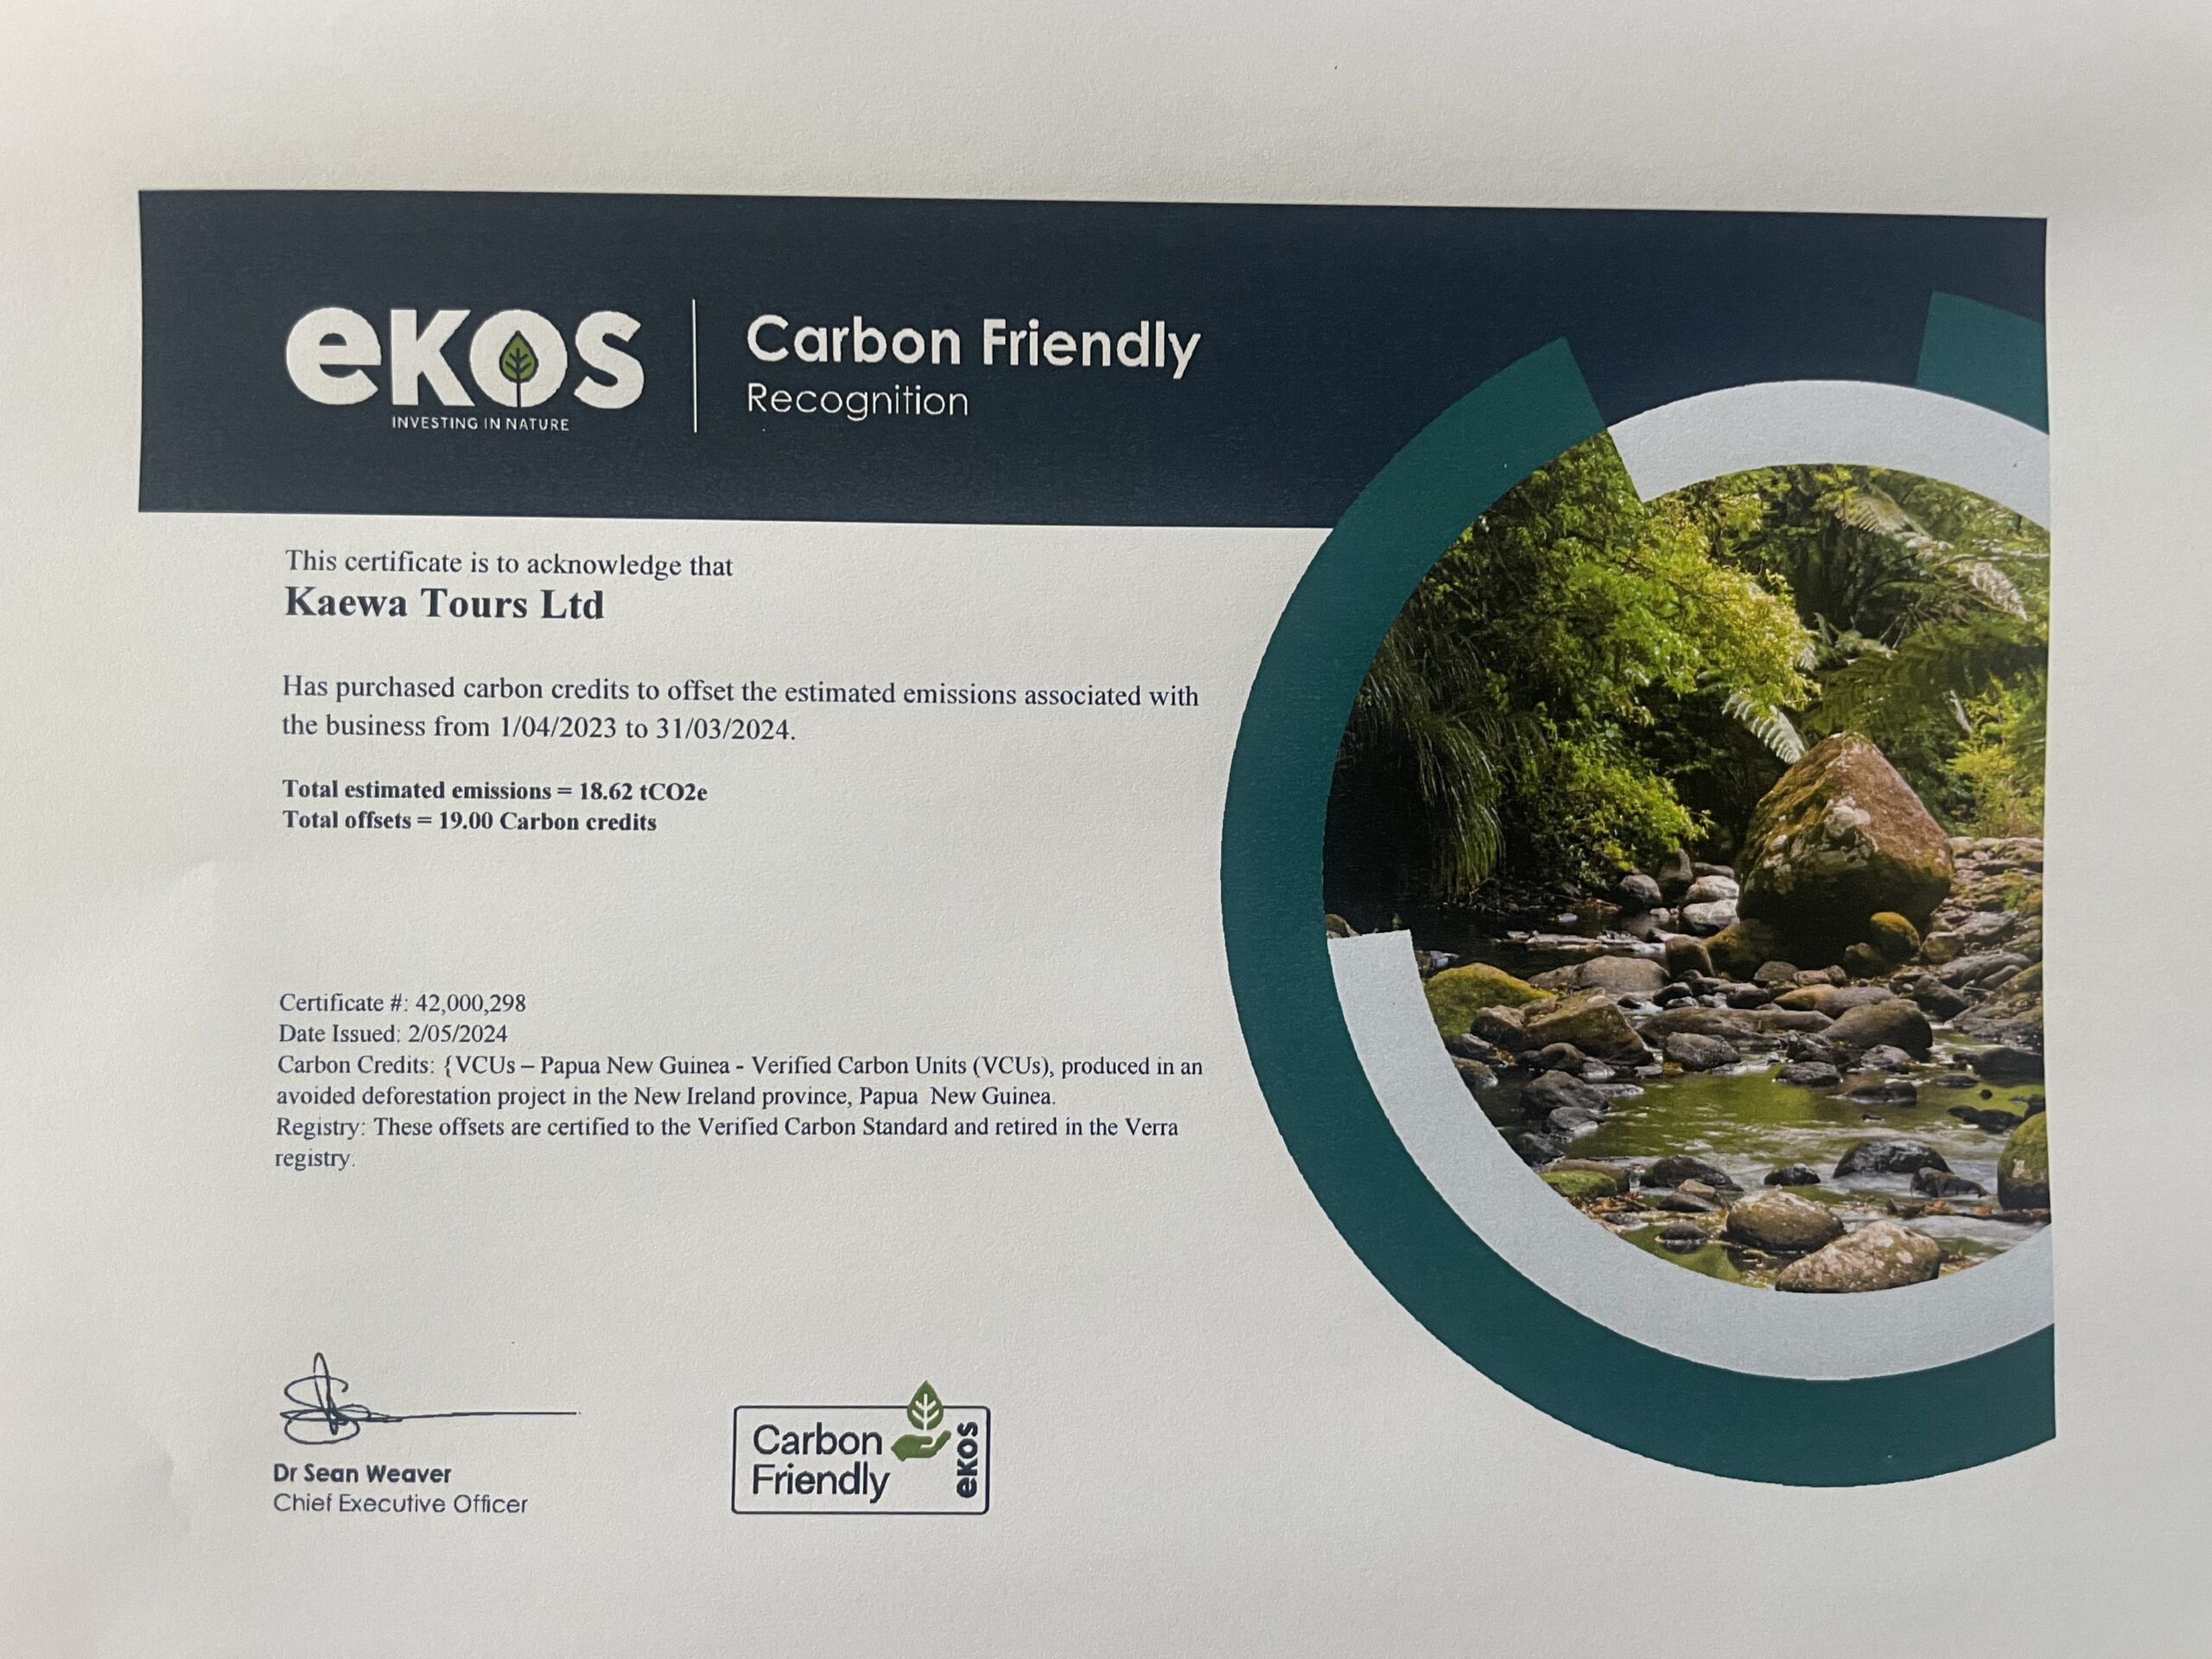 Kaewa Tours - a Carbon Friendly Business